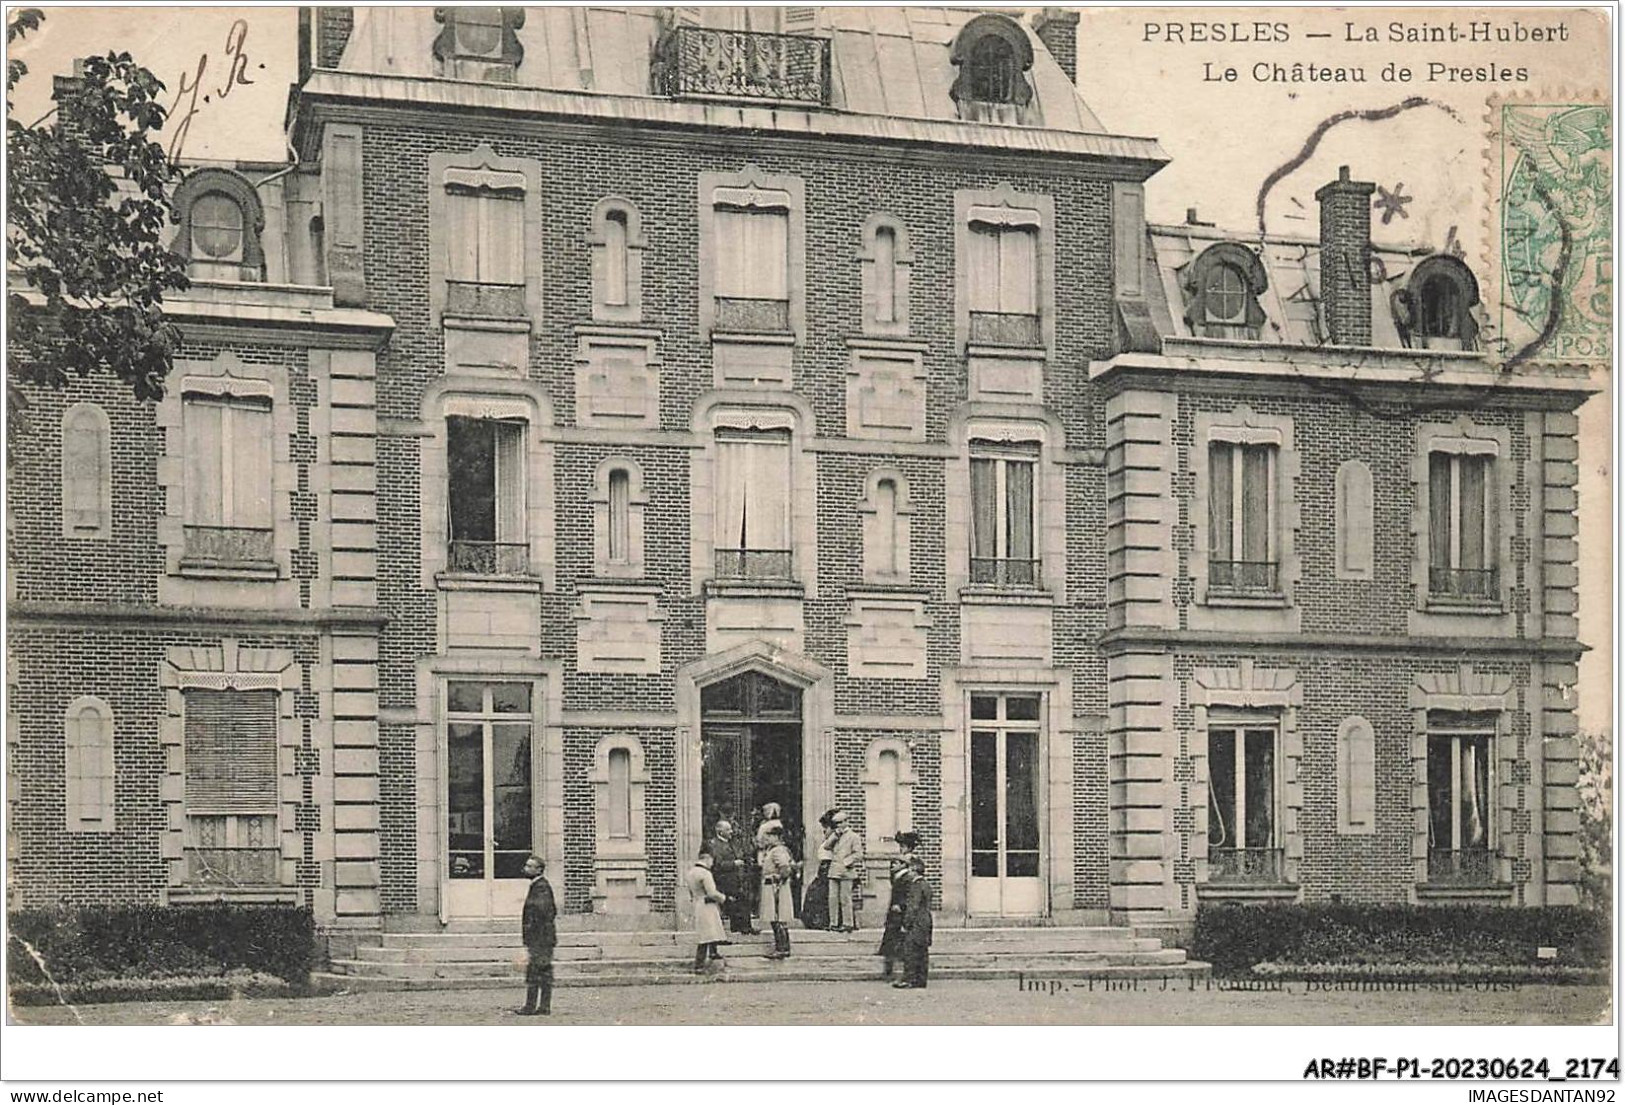 AR#BFP1-95-1091 - PRESLES - La Saint-Hubert - Le Château De Presles - Presles